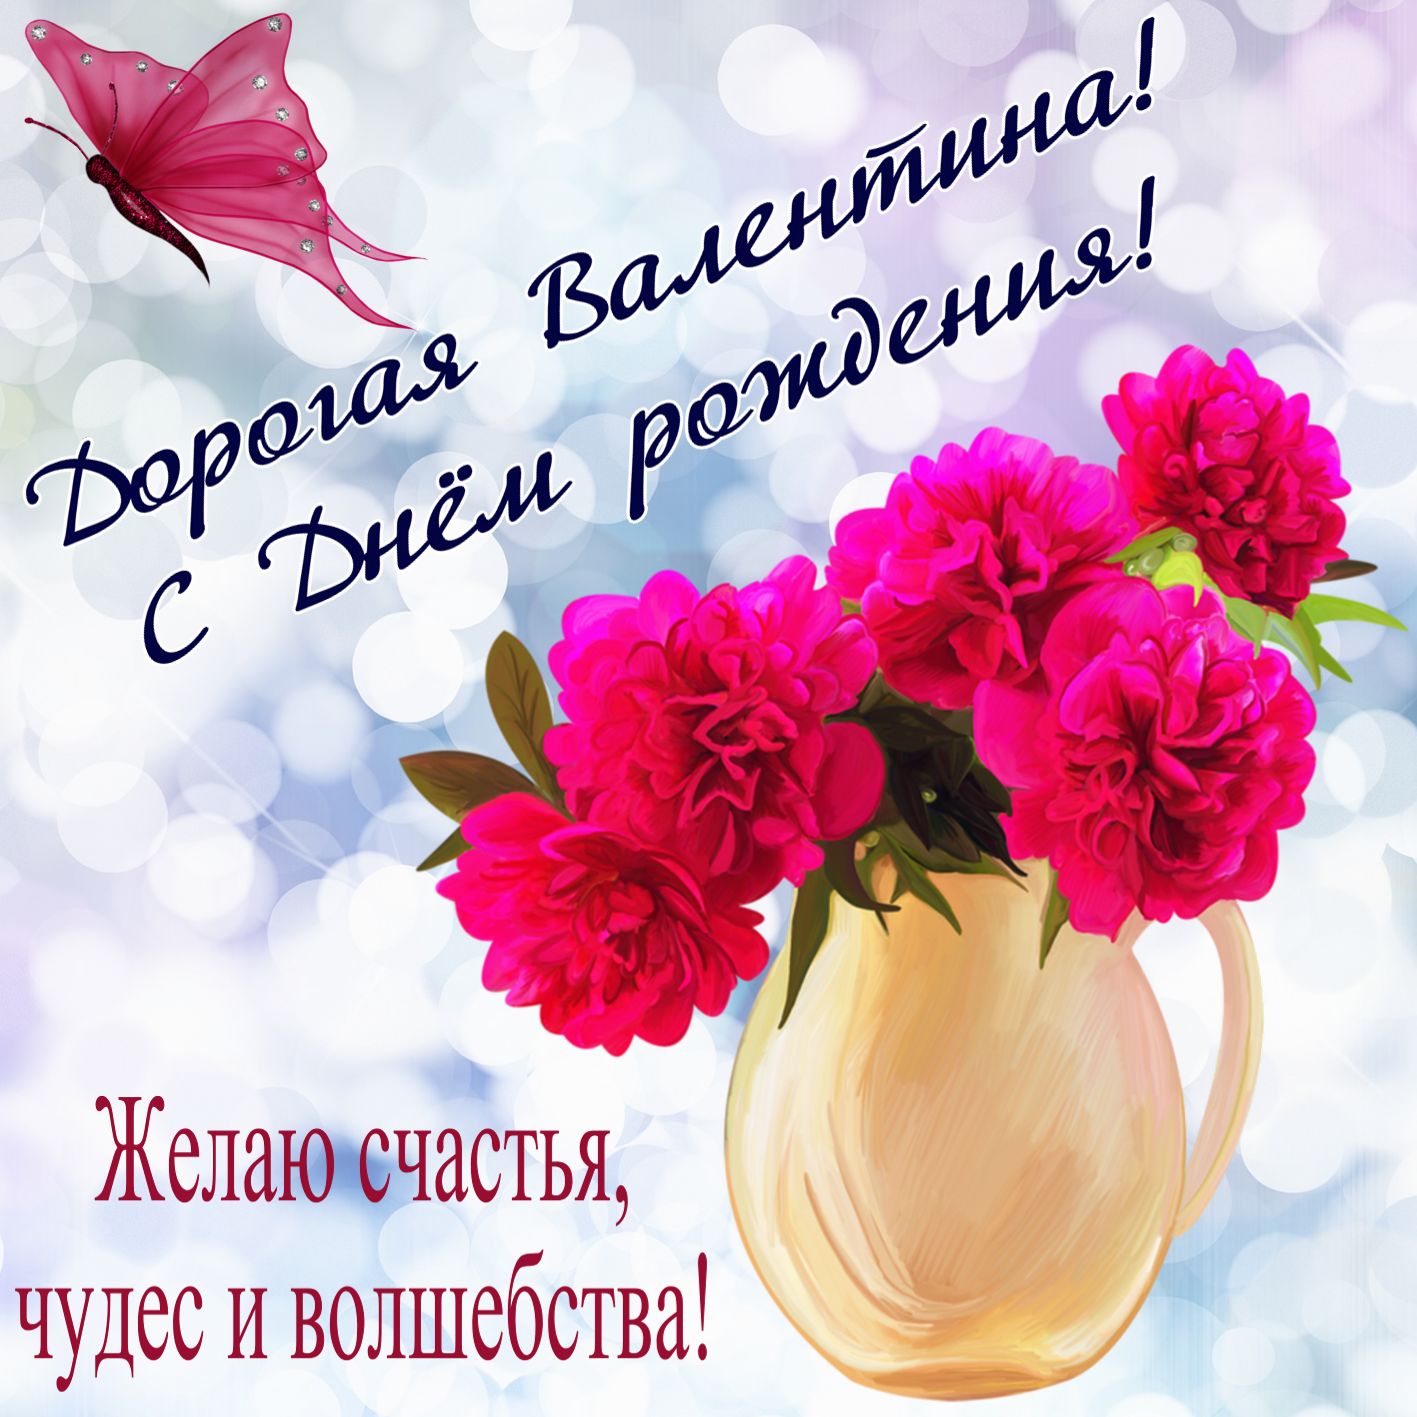 Открытка на День рождения Валентине - красивые цветы в вазе на светлом фоне